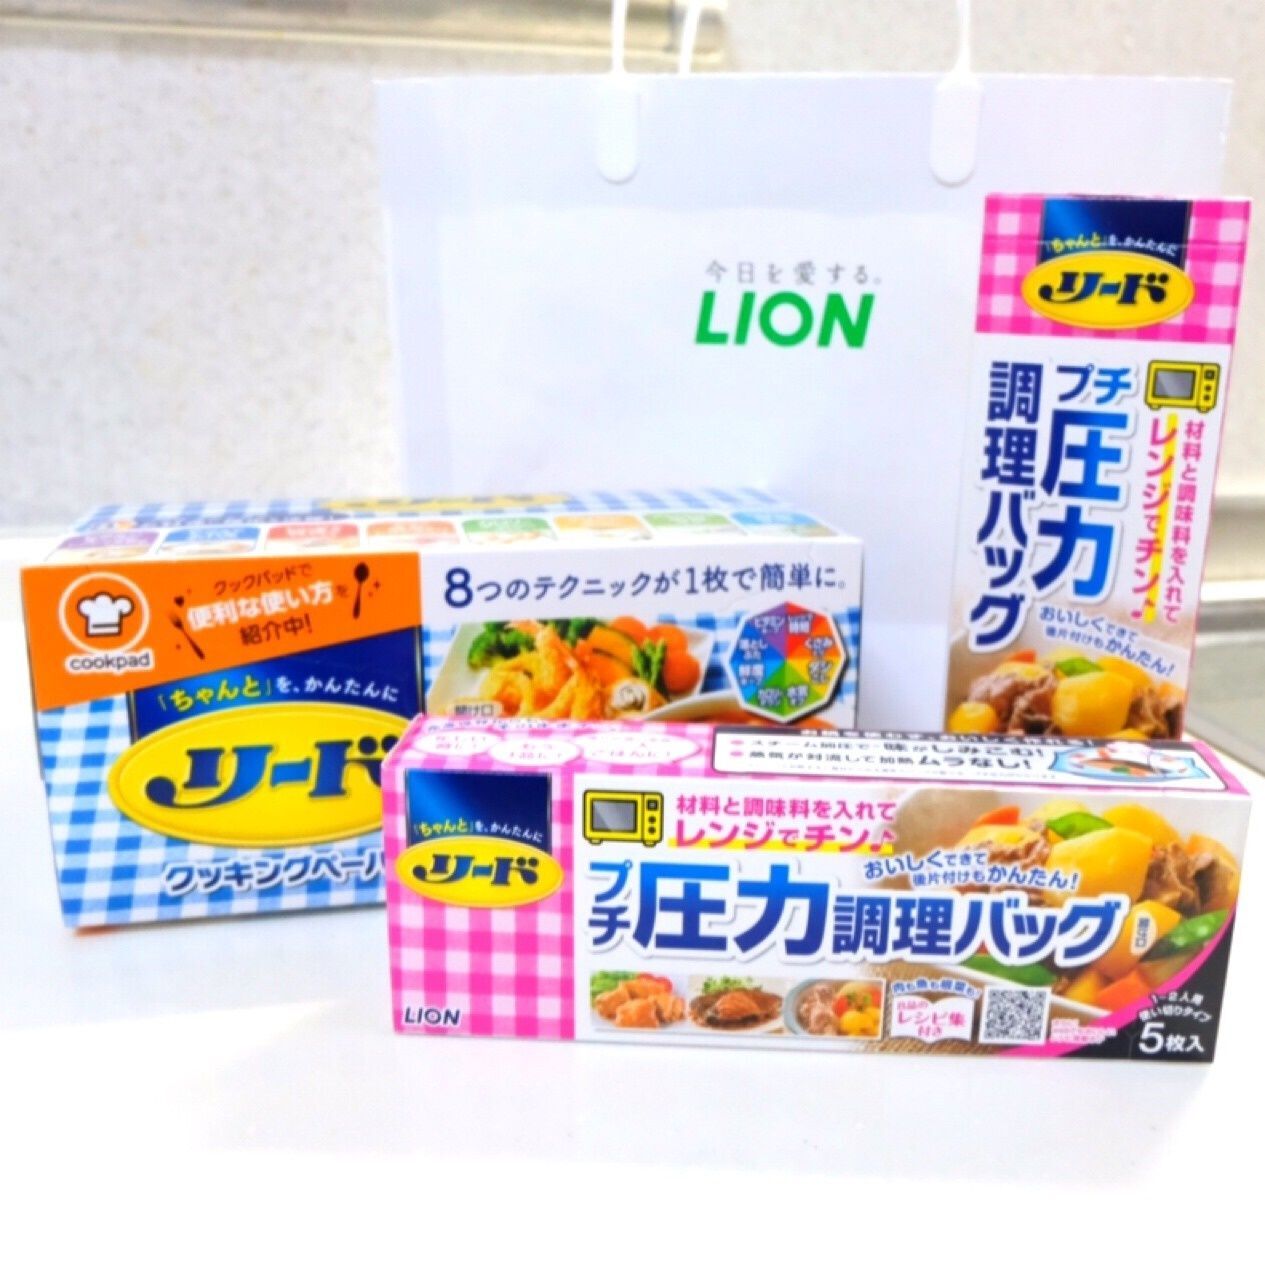 ライオン【リードプチ圧力調理バッグ】のお土産